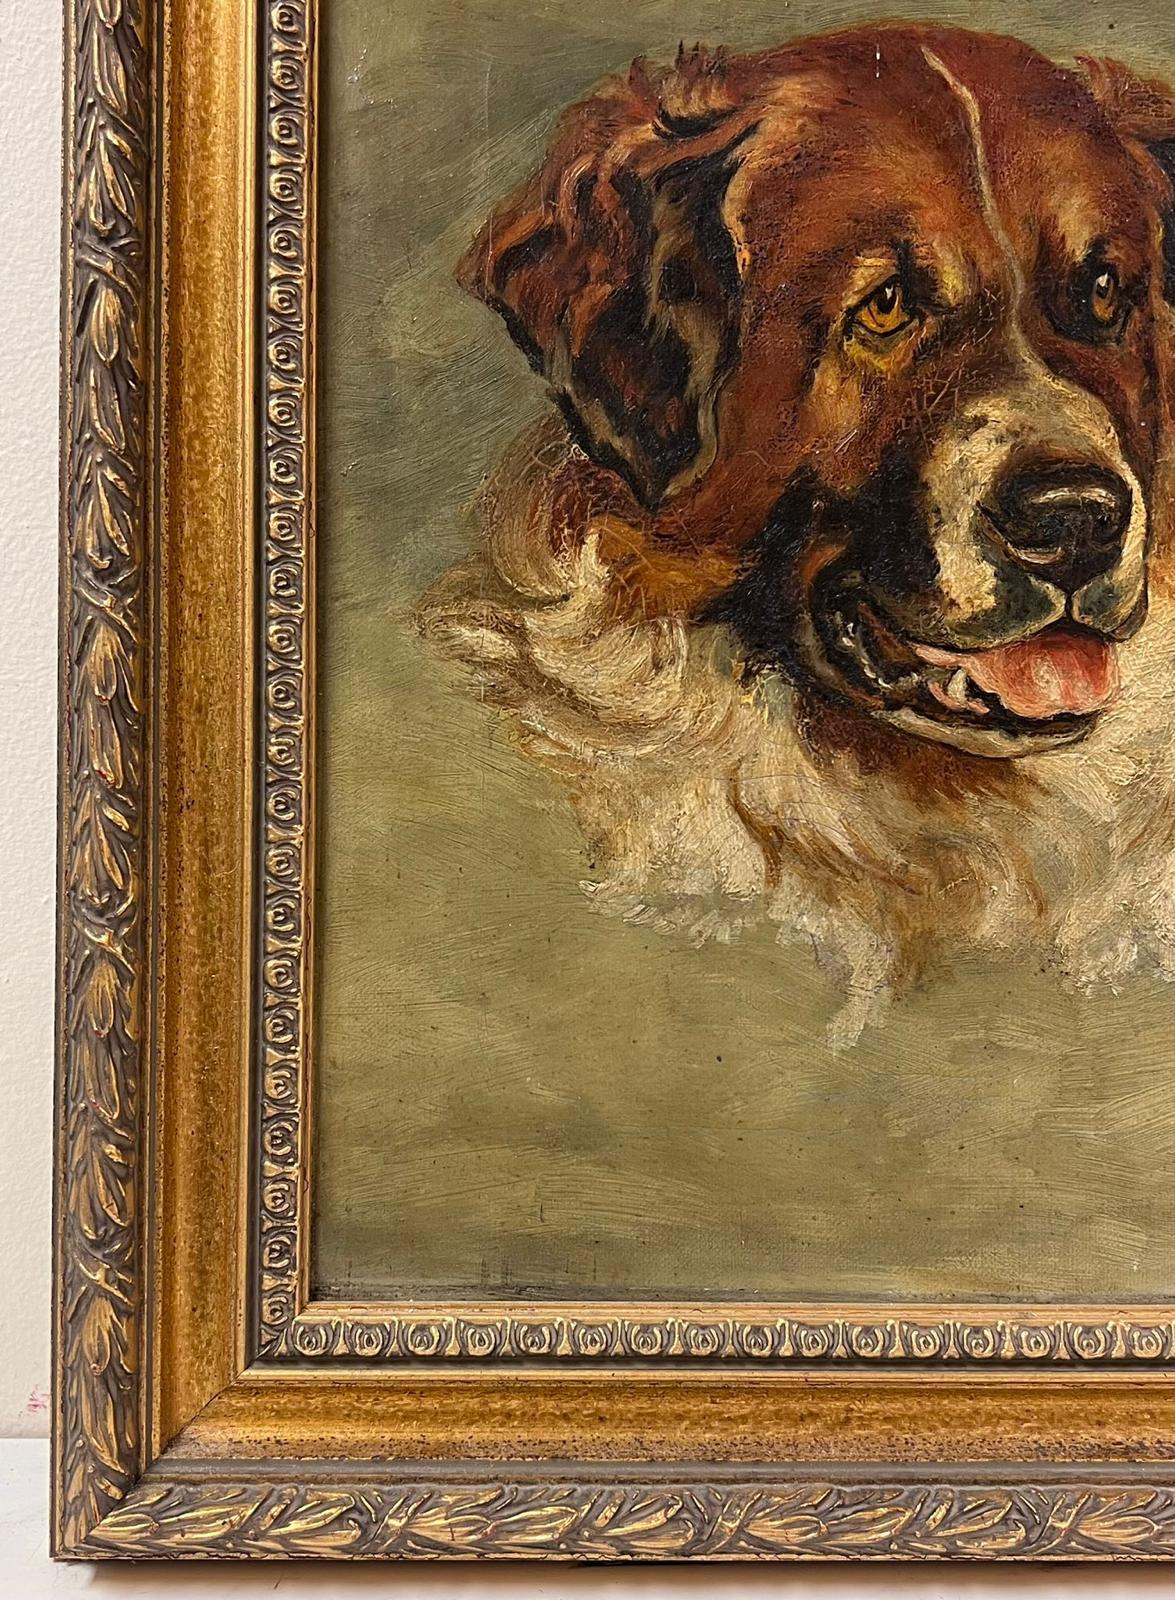 Kopfporträt eines Hundes St. Bernard? Antikes englisches Ölgemälde auf Leinwand (Braun), Portrait Painting, von Antique English artist